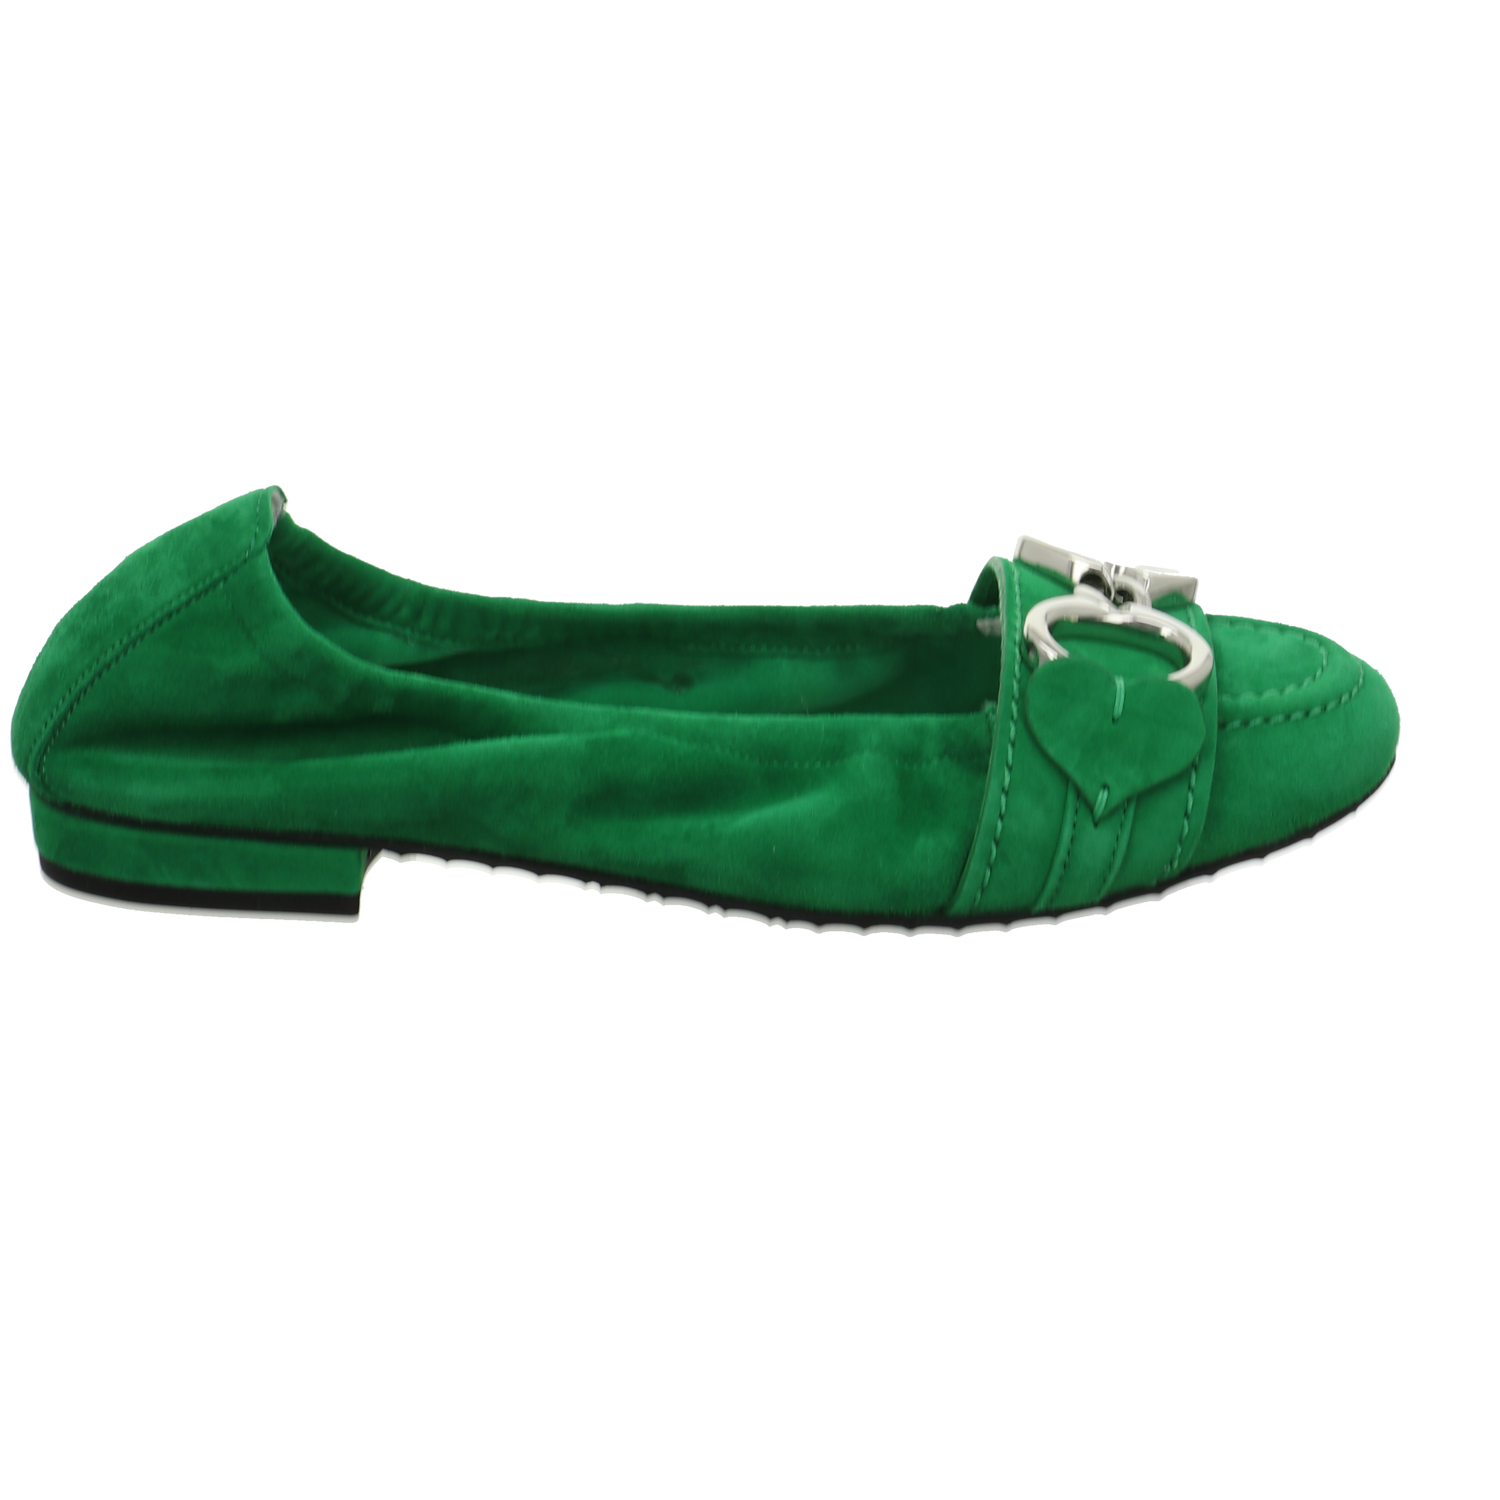 K + S shoes Pumps bis 25 mm grün